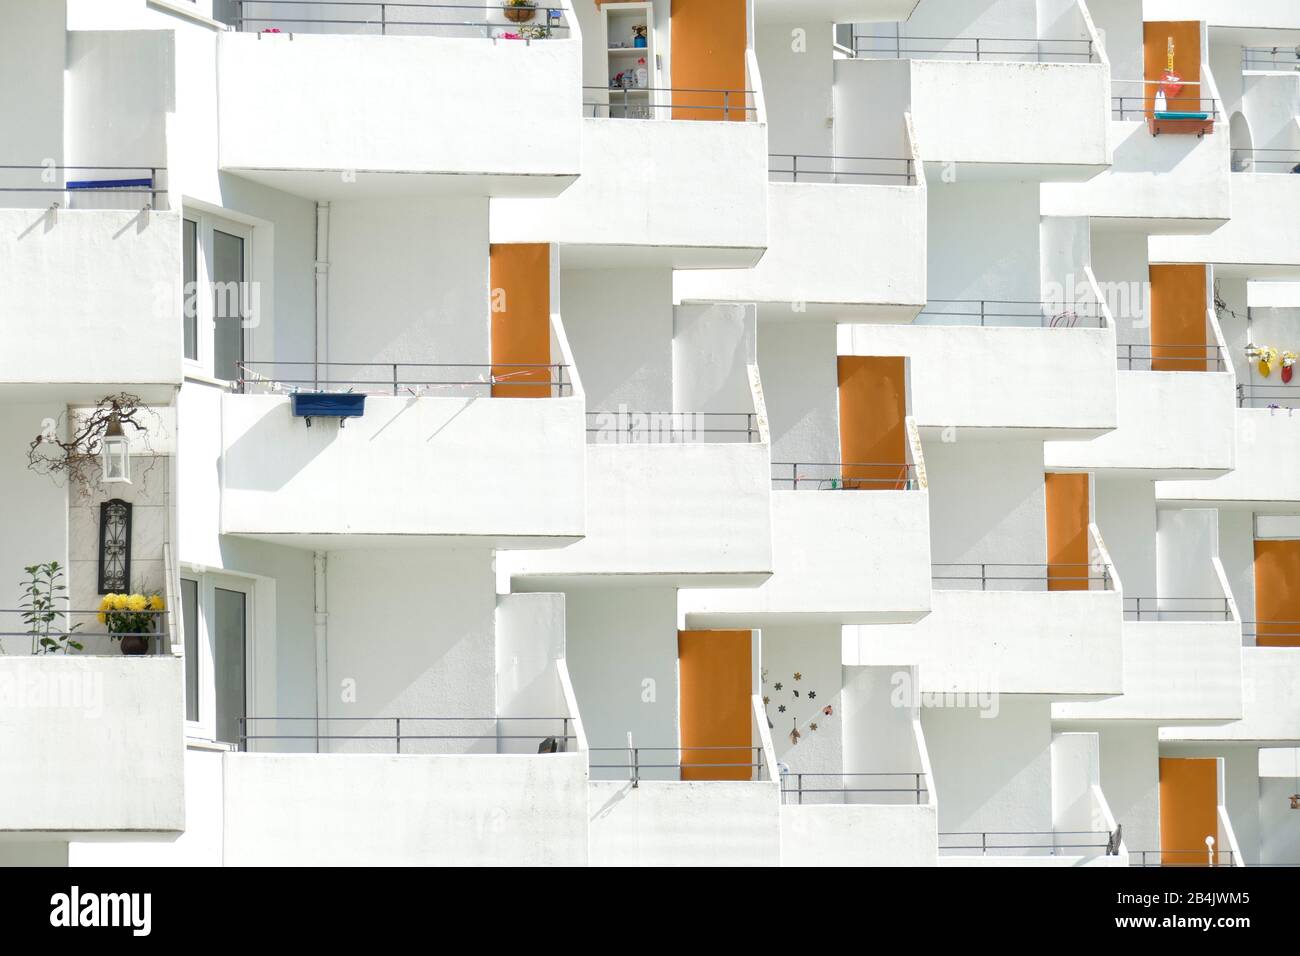 Balkone an einem weißen Wohnhaus, monotone Hausfassade, Vahr, Bremen, Deutschland Foto Stock